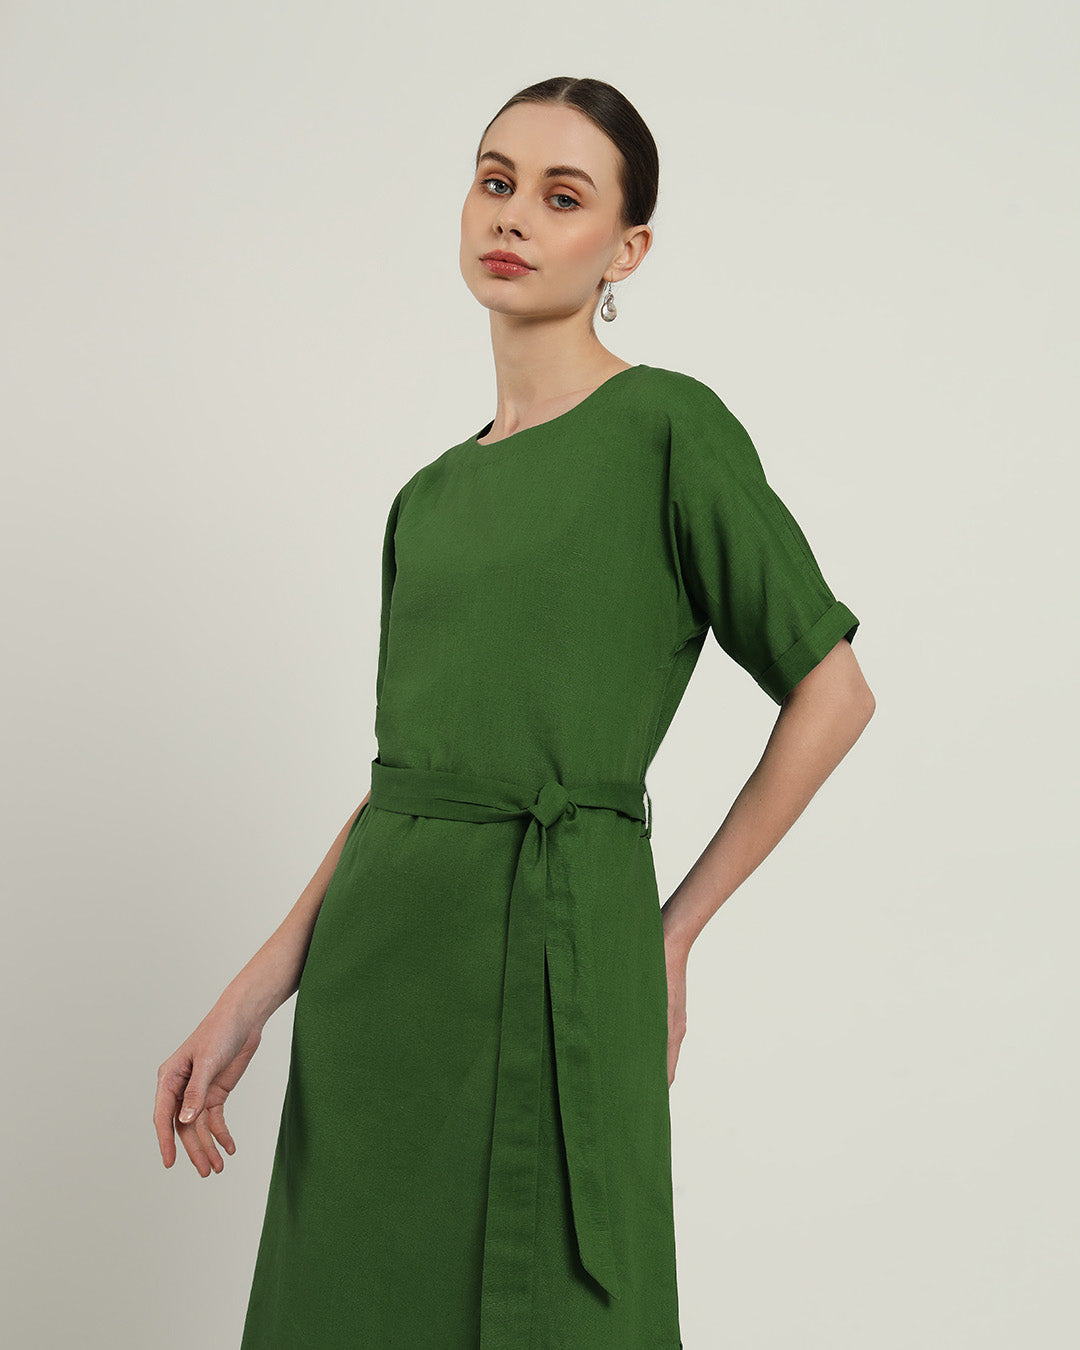 The Tayma Emerald Dress